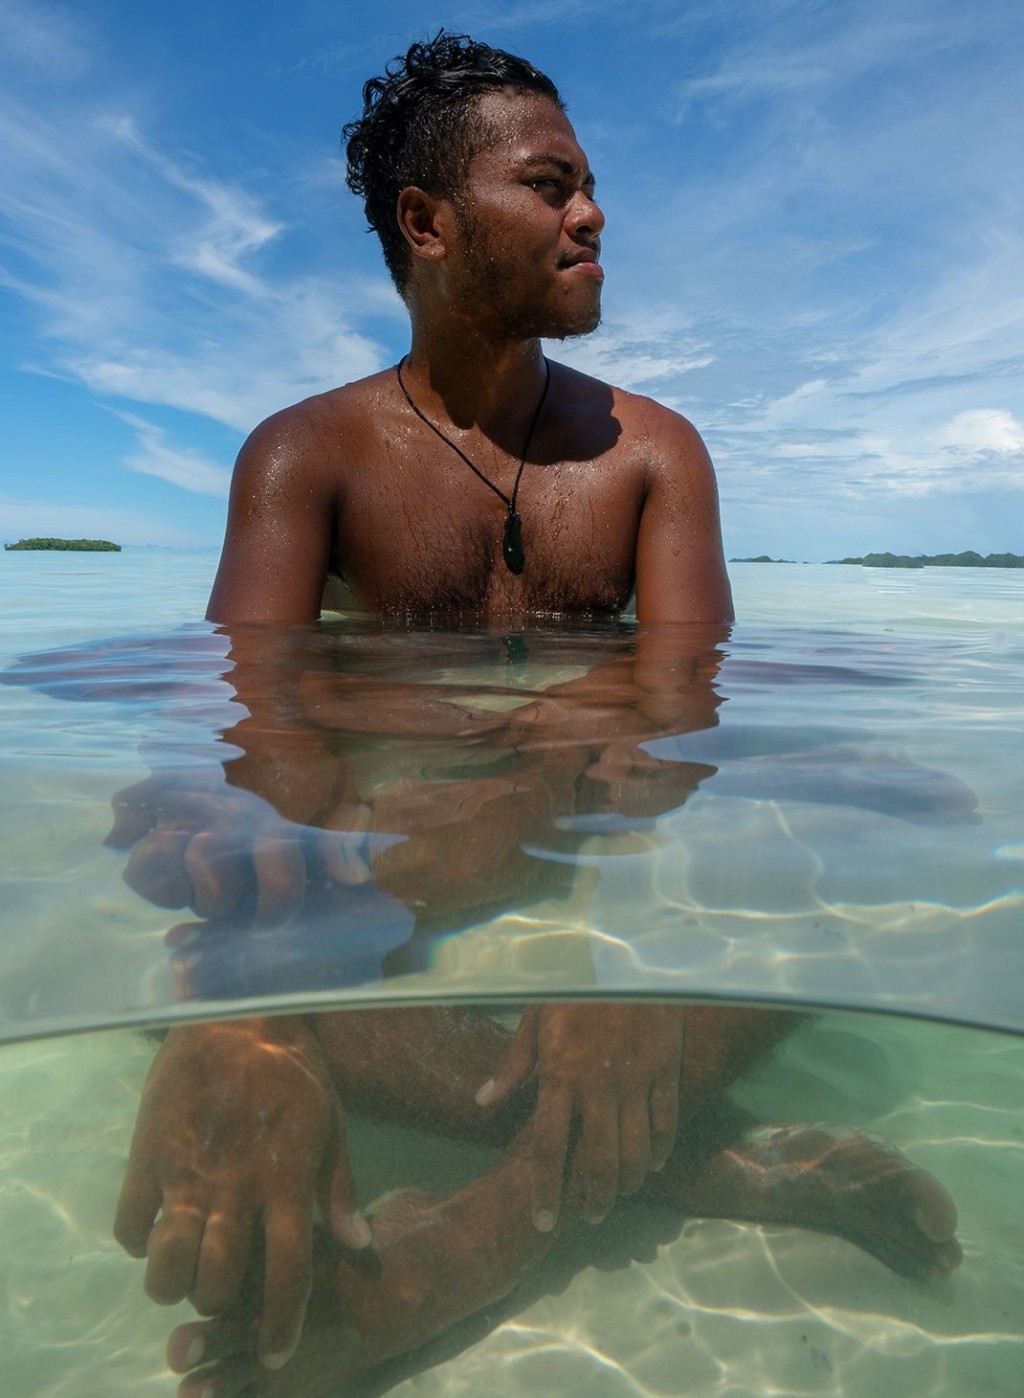 帛琉的Ol'au Palau計畫，備有一系列由當地人帶領才能體驗的活動可供參與。